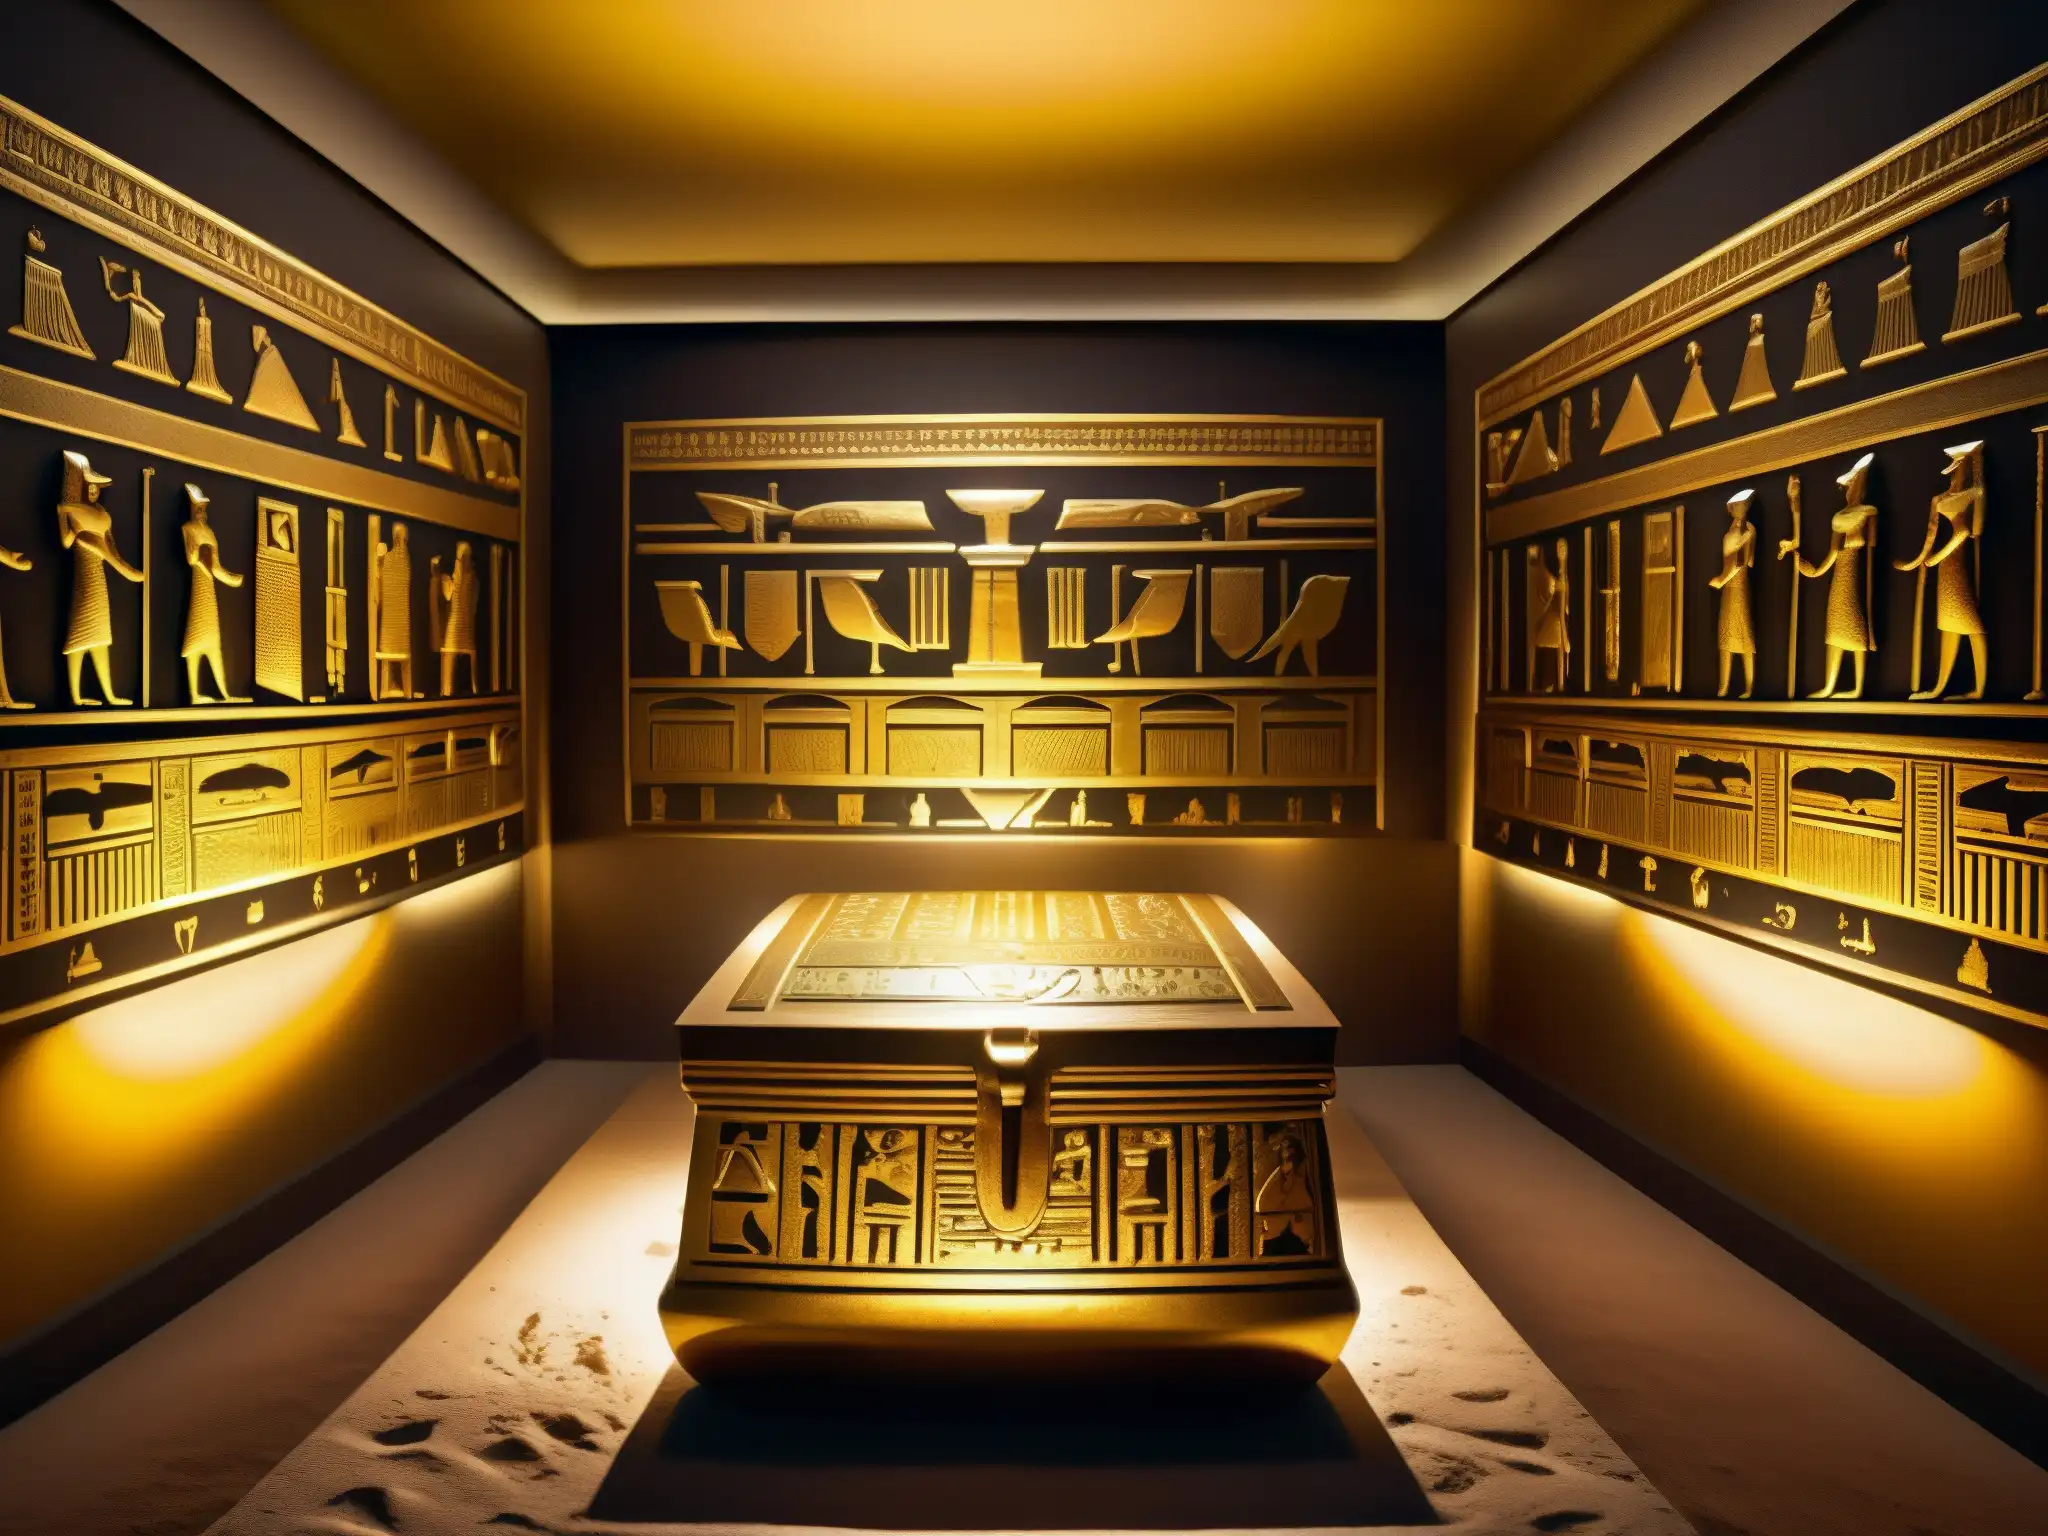 Una majestuosa sala de antigüedades egipcias en un museo con el icónico sarcófago dorado del rey Tutankamón en el centro